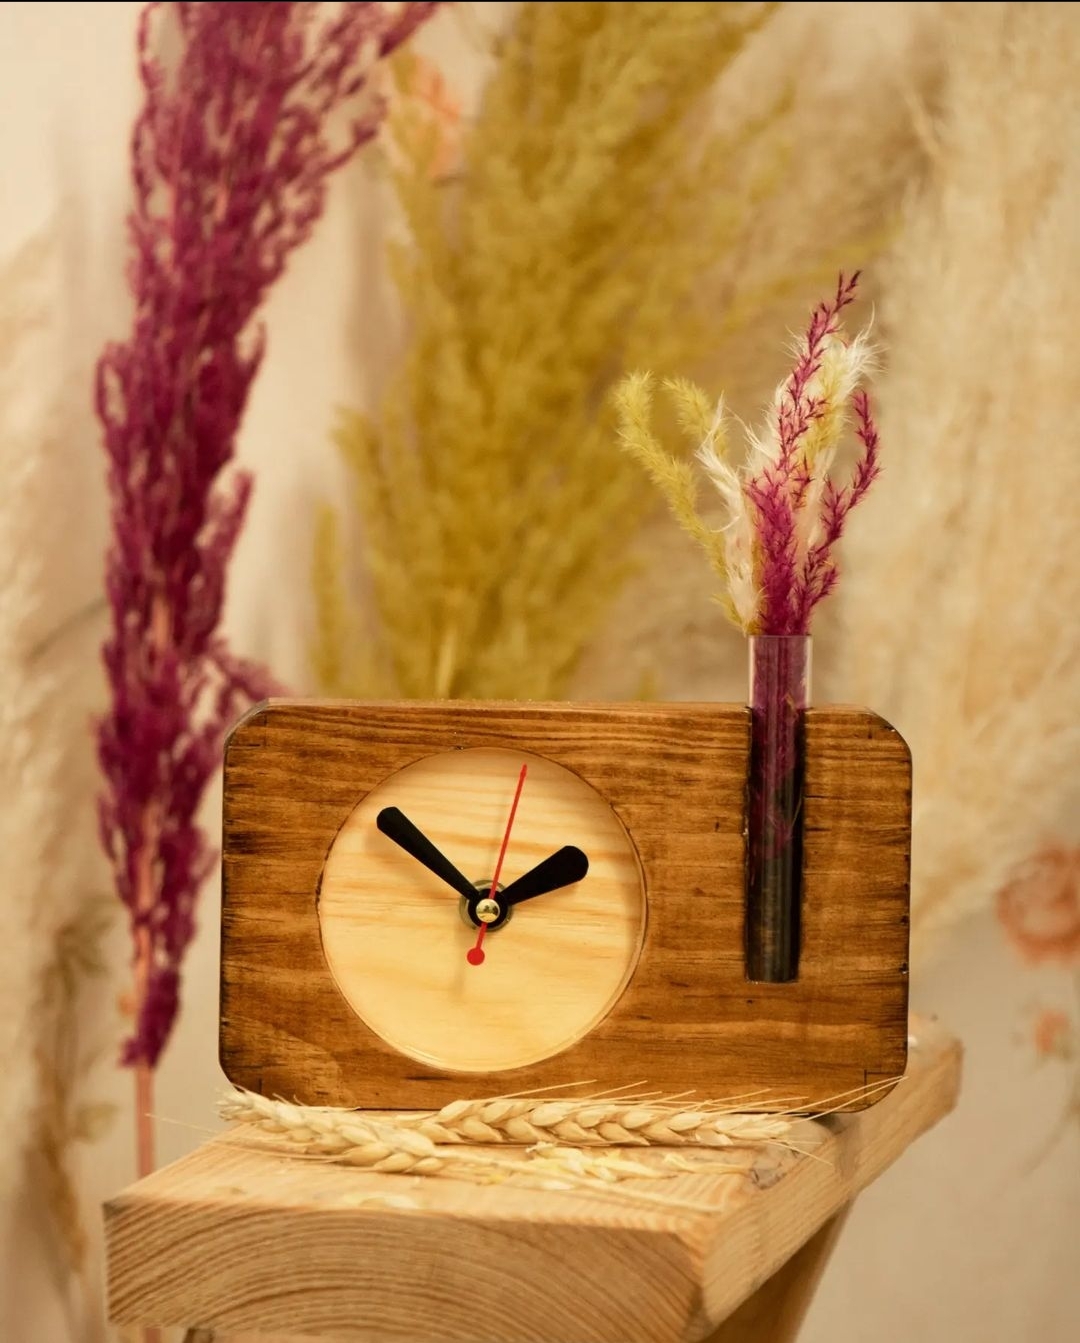 ساعت رومیزی همراه گلدان شیشه نمایان قابلیت صفحه و عقربه شبتاب چوب فنلاندی ضدآب